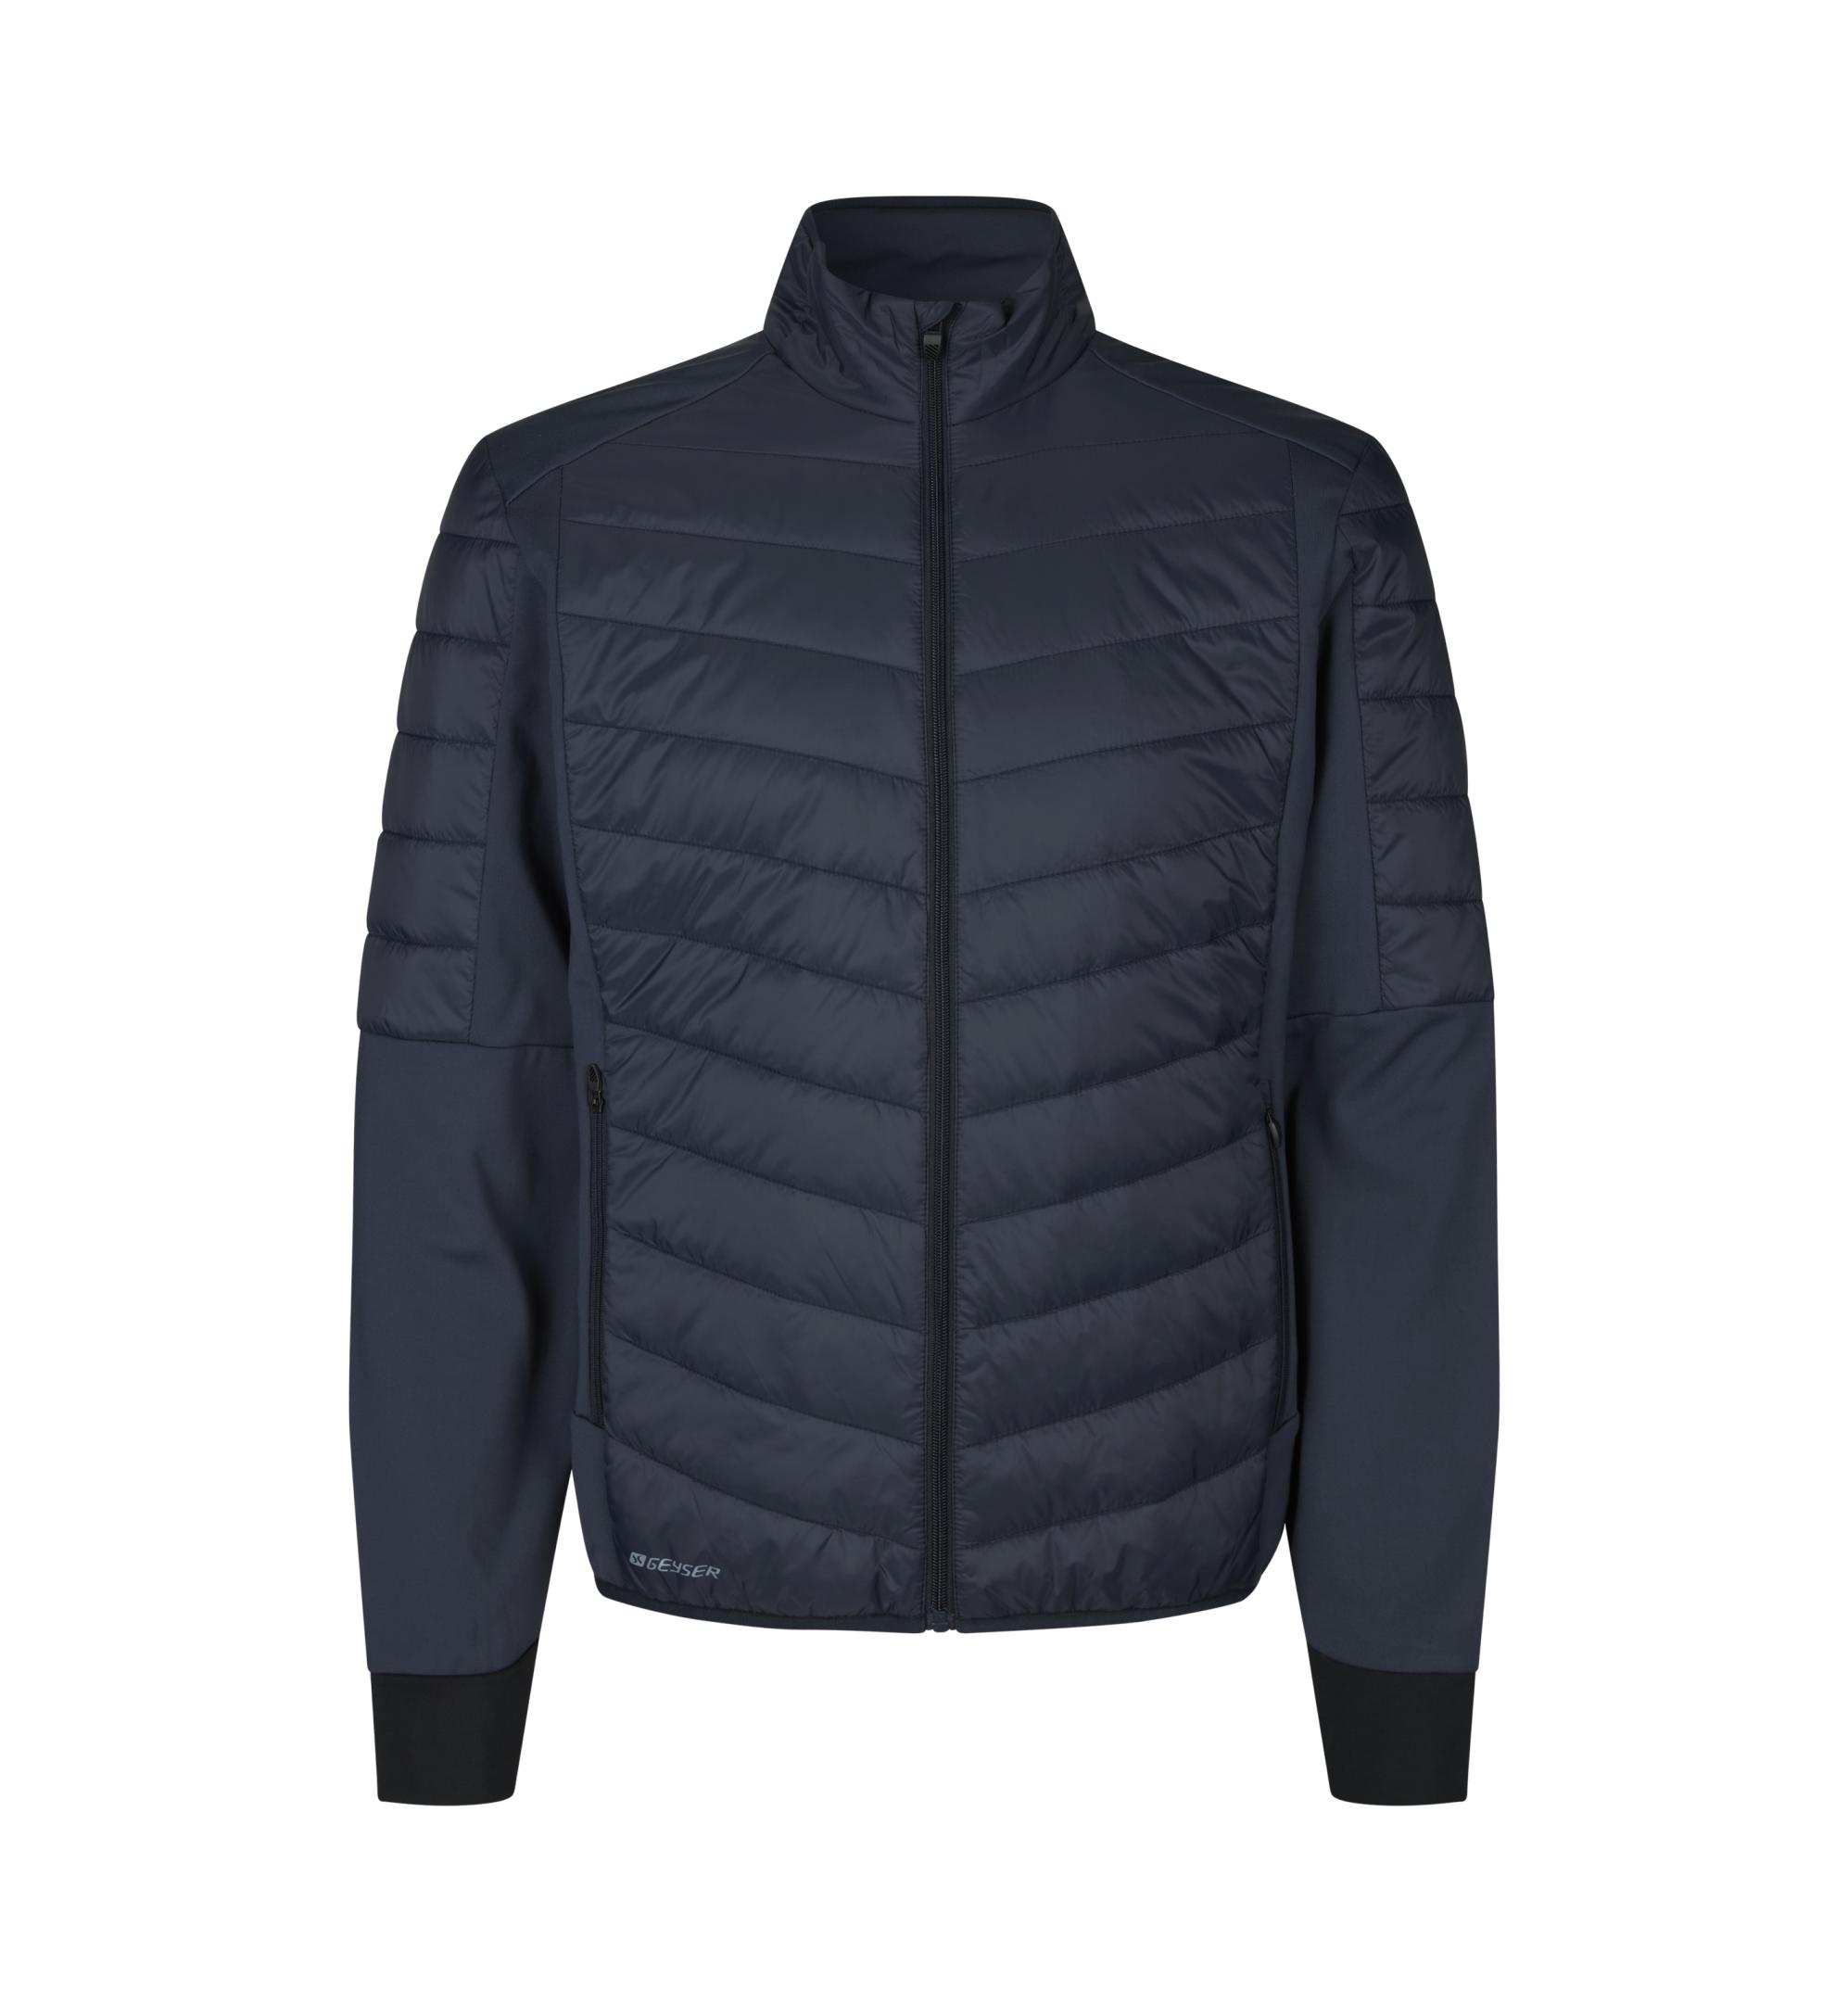 Hybrid jacket Geyser by ID®